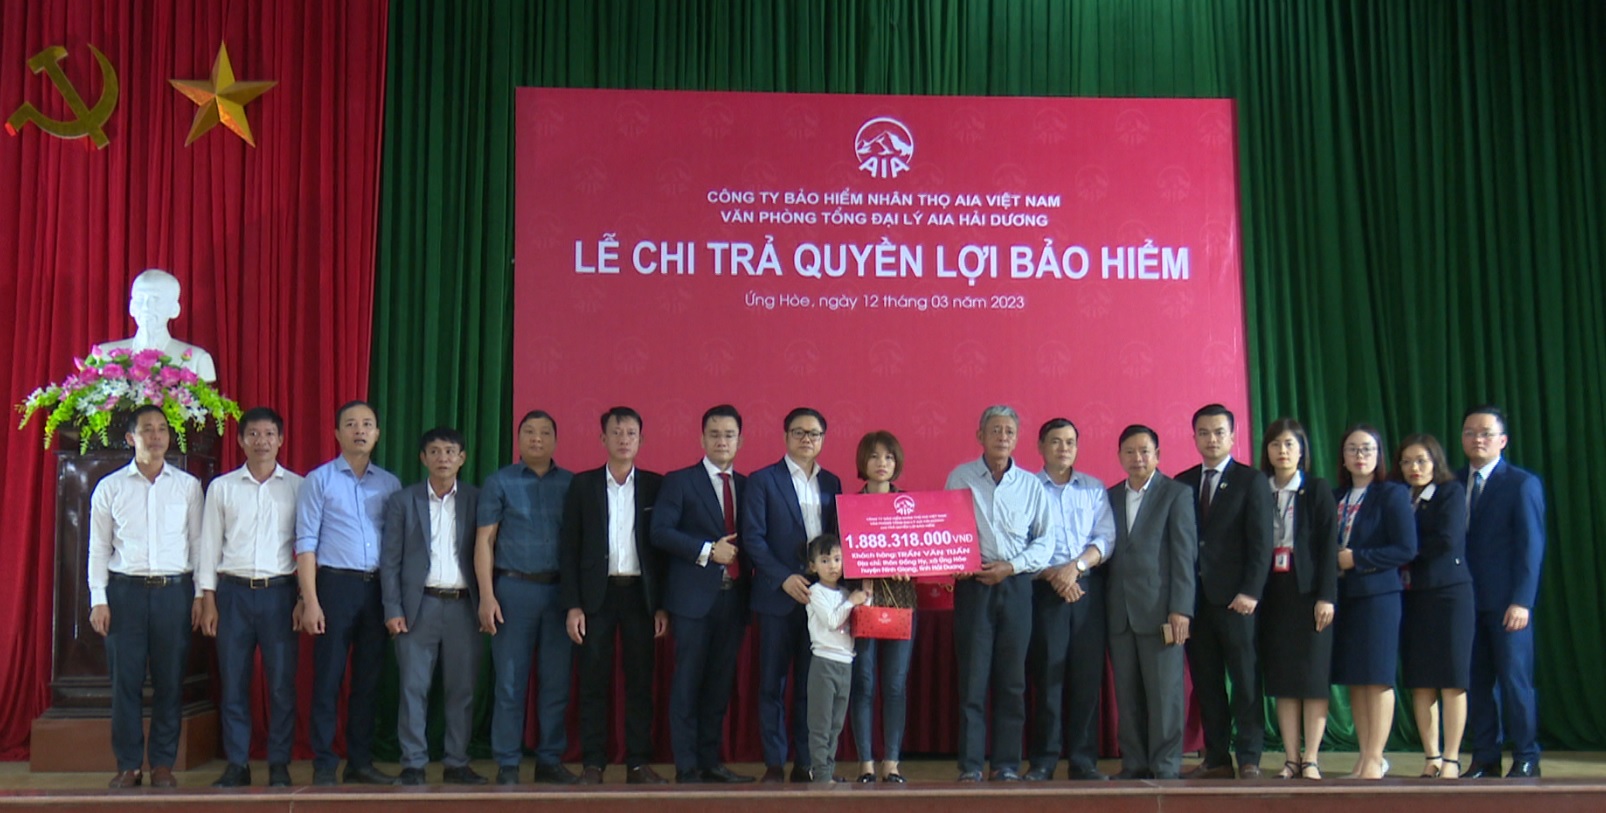 Tổng đại lý AIA Hải Dương chi trả gần 1,9 tỷ đồng cho khách hàng ở Ninh Giang